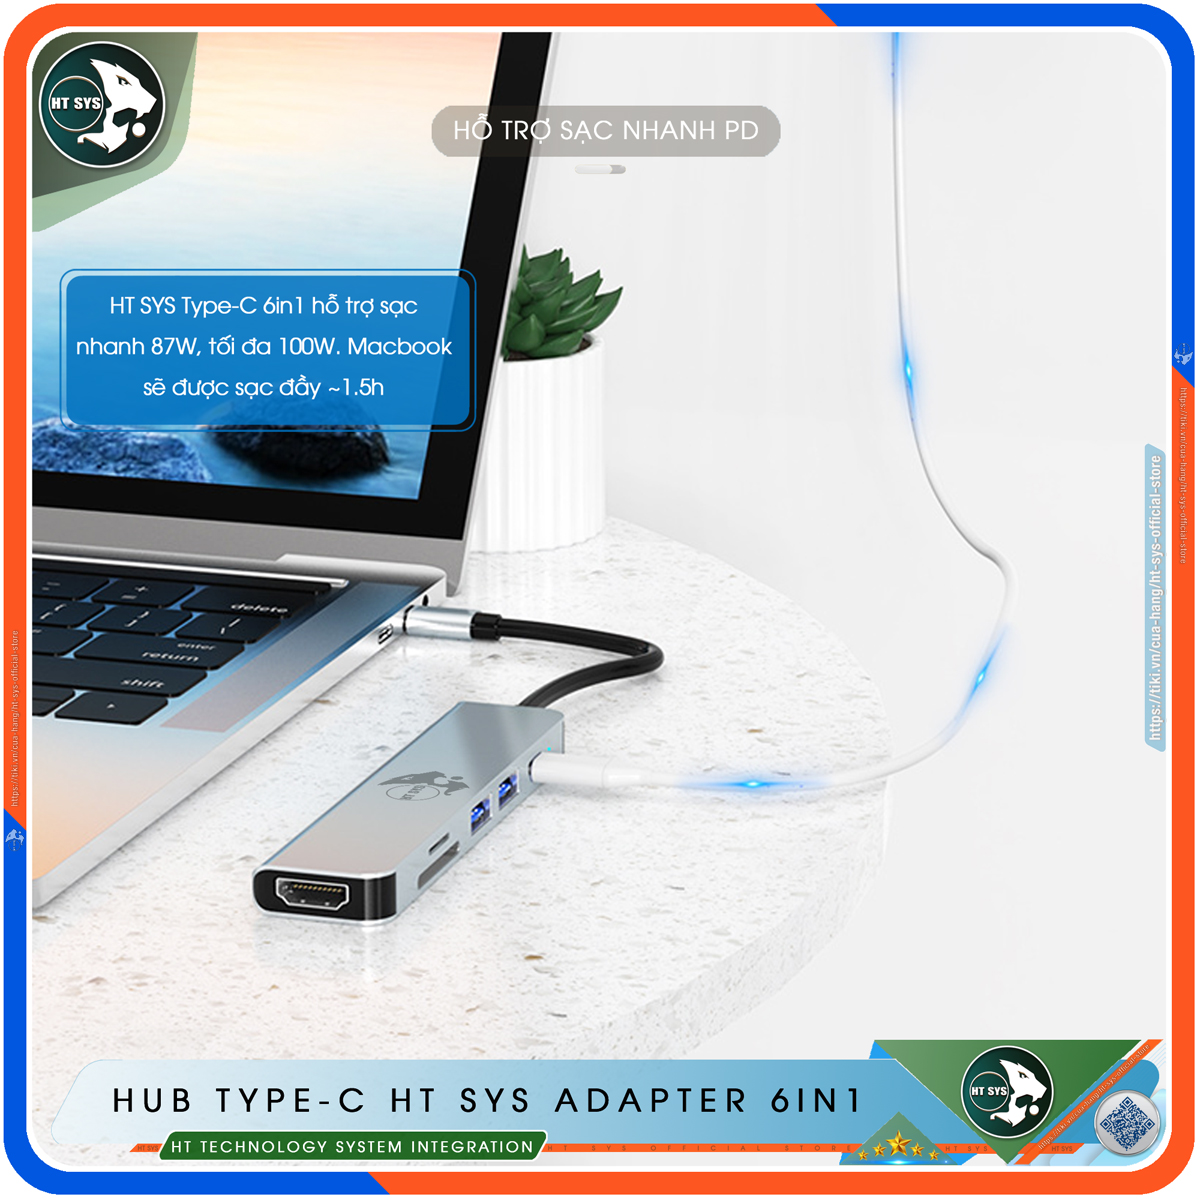 Hub Type C HT SYS 6in1 - Hub Chuyển Đổi USB Type-C To HDMI Chuẩn HDTV - HDMI 4K, USB 3.0, Sạc Nhanh Type C PD, Khe Đọc Thẻ SD/TF - Kết Nối Nhiều Thiết Bị Với Tốc Độ Cao - Dành Cho MacBook / Tivi / Laptop / PC / Máy Tính Bảng / Smartphone – Hàng Chính Hãng